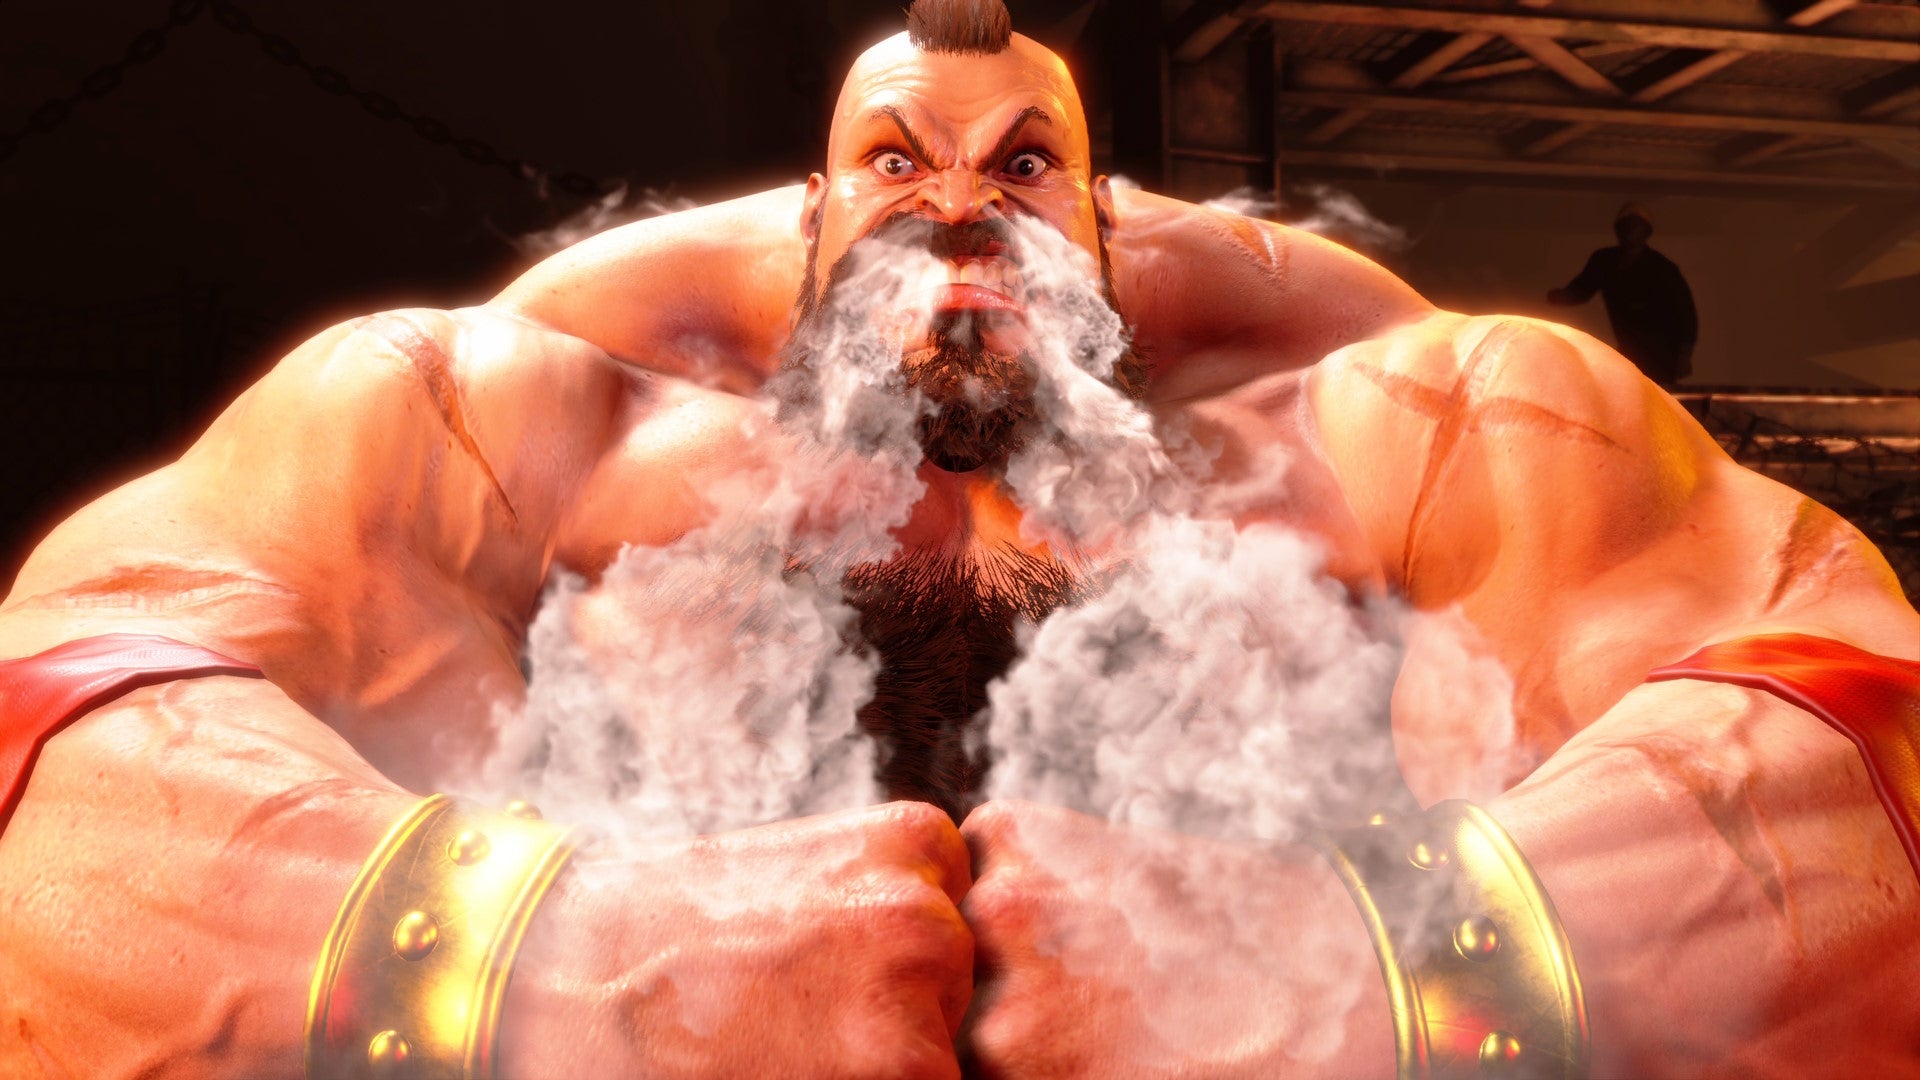 Zangief piledrives em Street Fighter 6 com um corpo que envergonha os rapazes do Gears